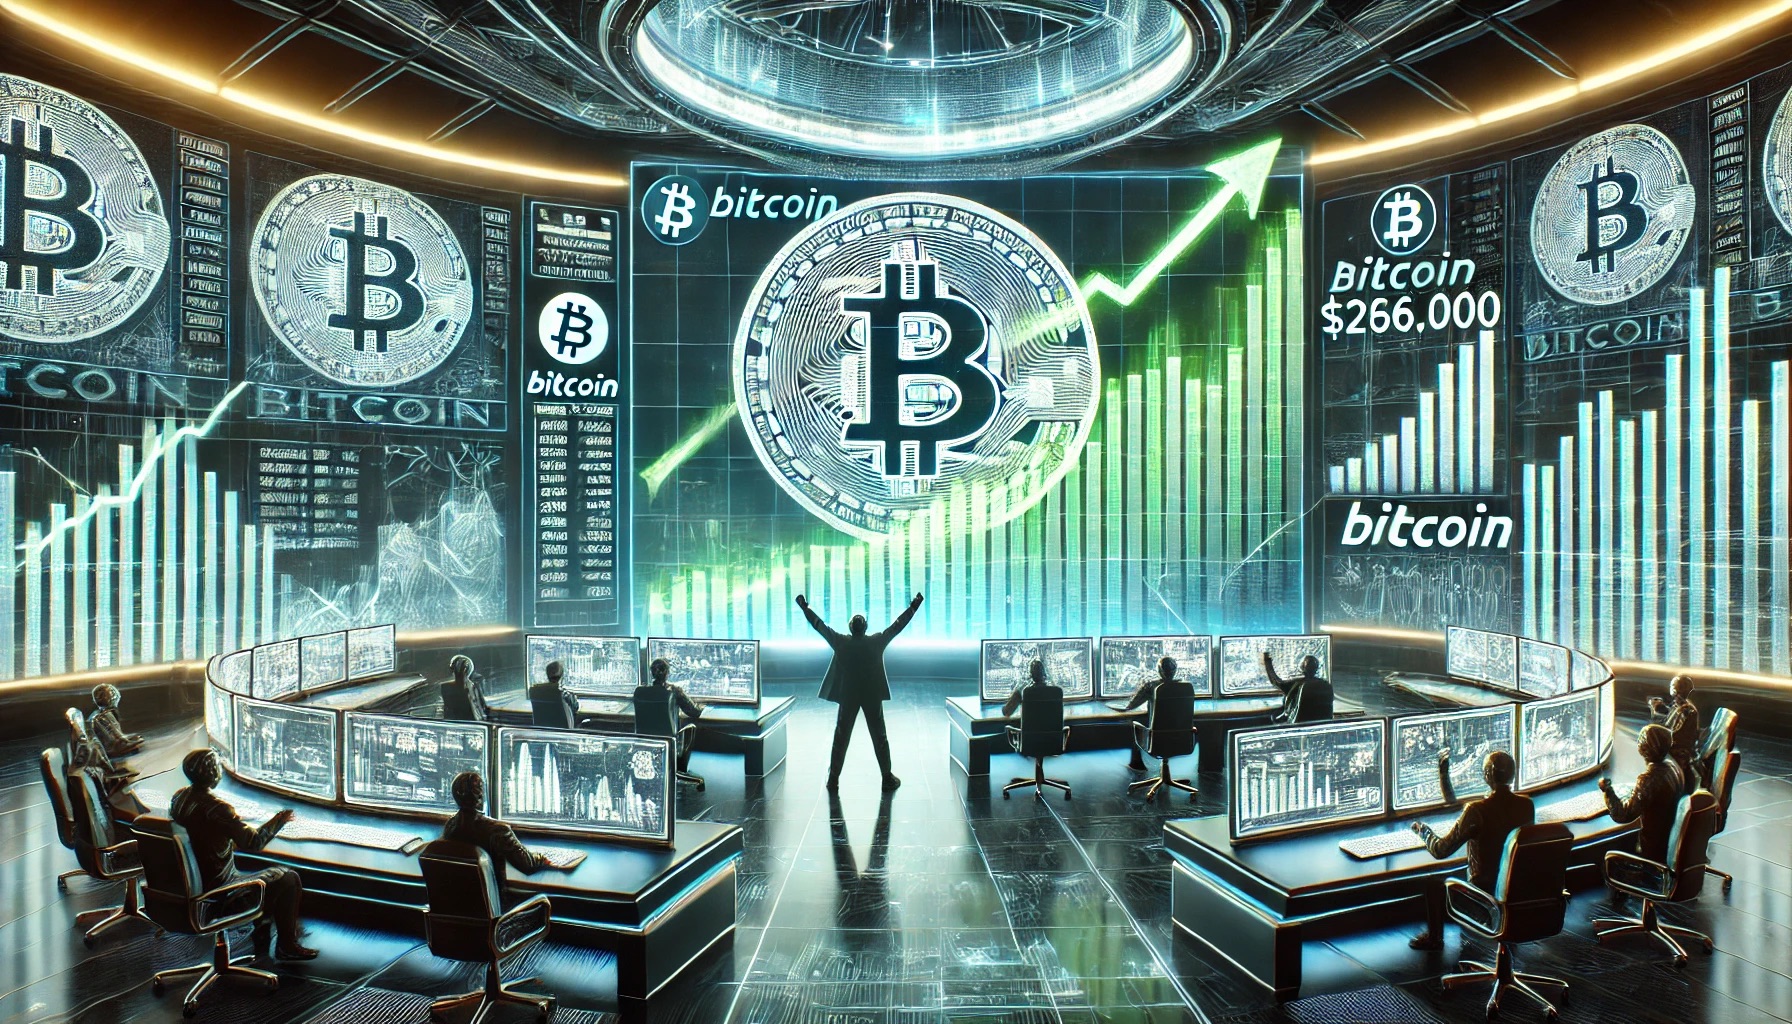 Analista de criptografia diz que o Bitcoin está caminhando para US$ 260.000, mas isso deve acontecer primeiro